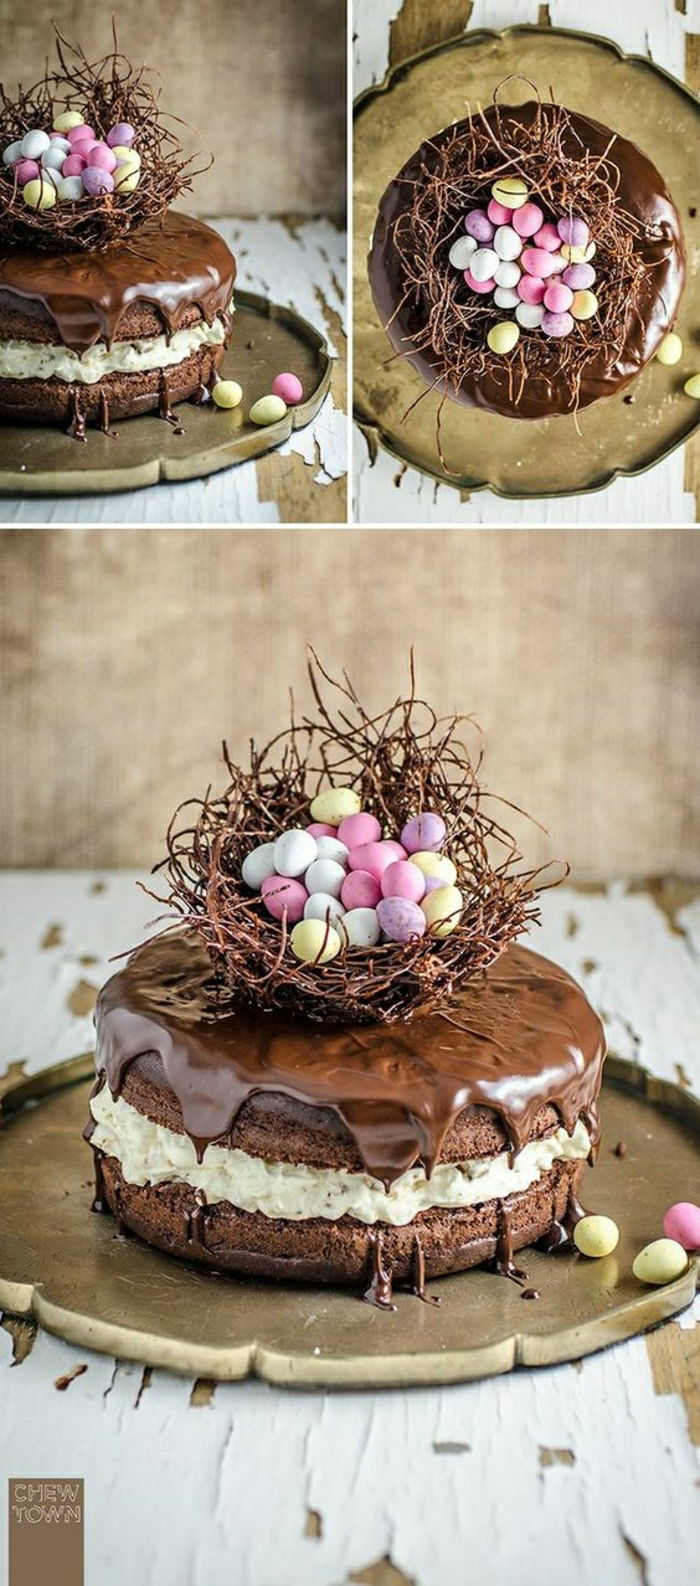 Ciasto czekoladowe z motywem wielkanocnym Kosz wielkanocny z małymi kolorowymi jajkami